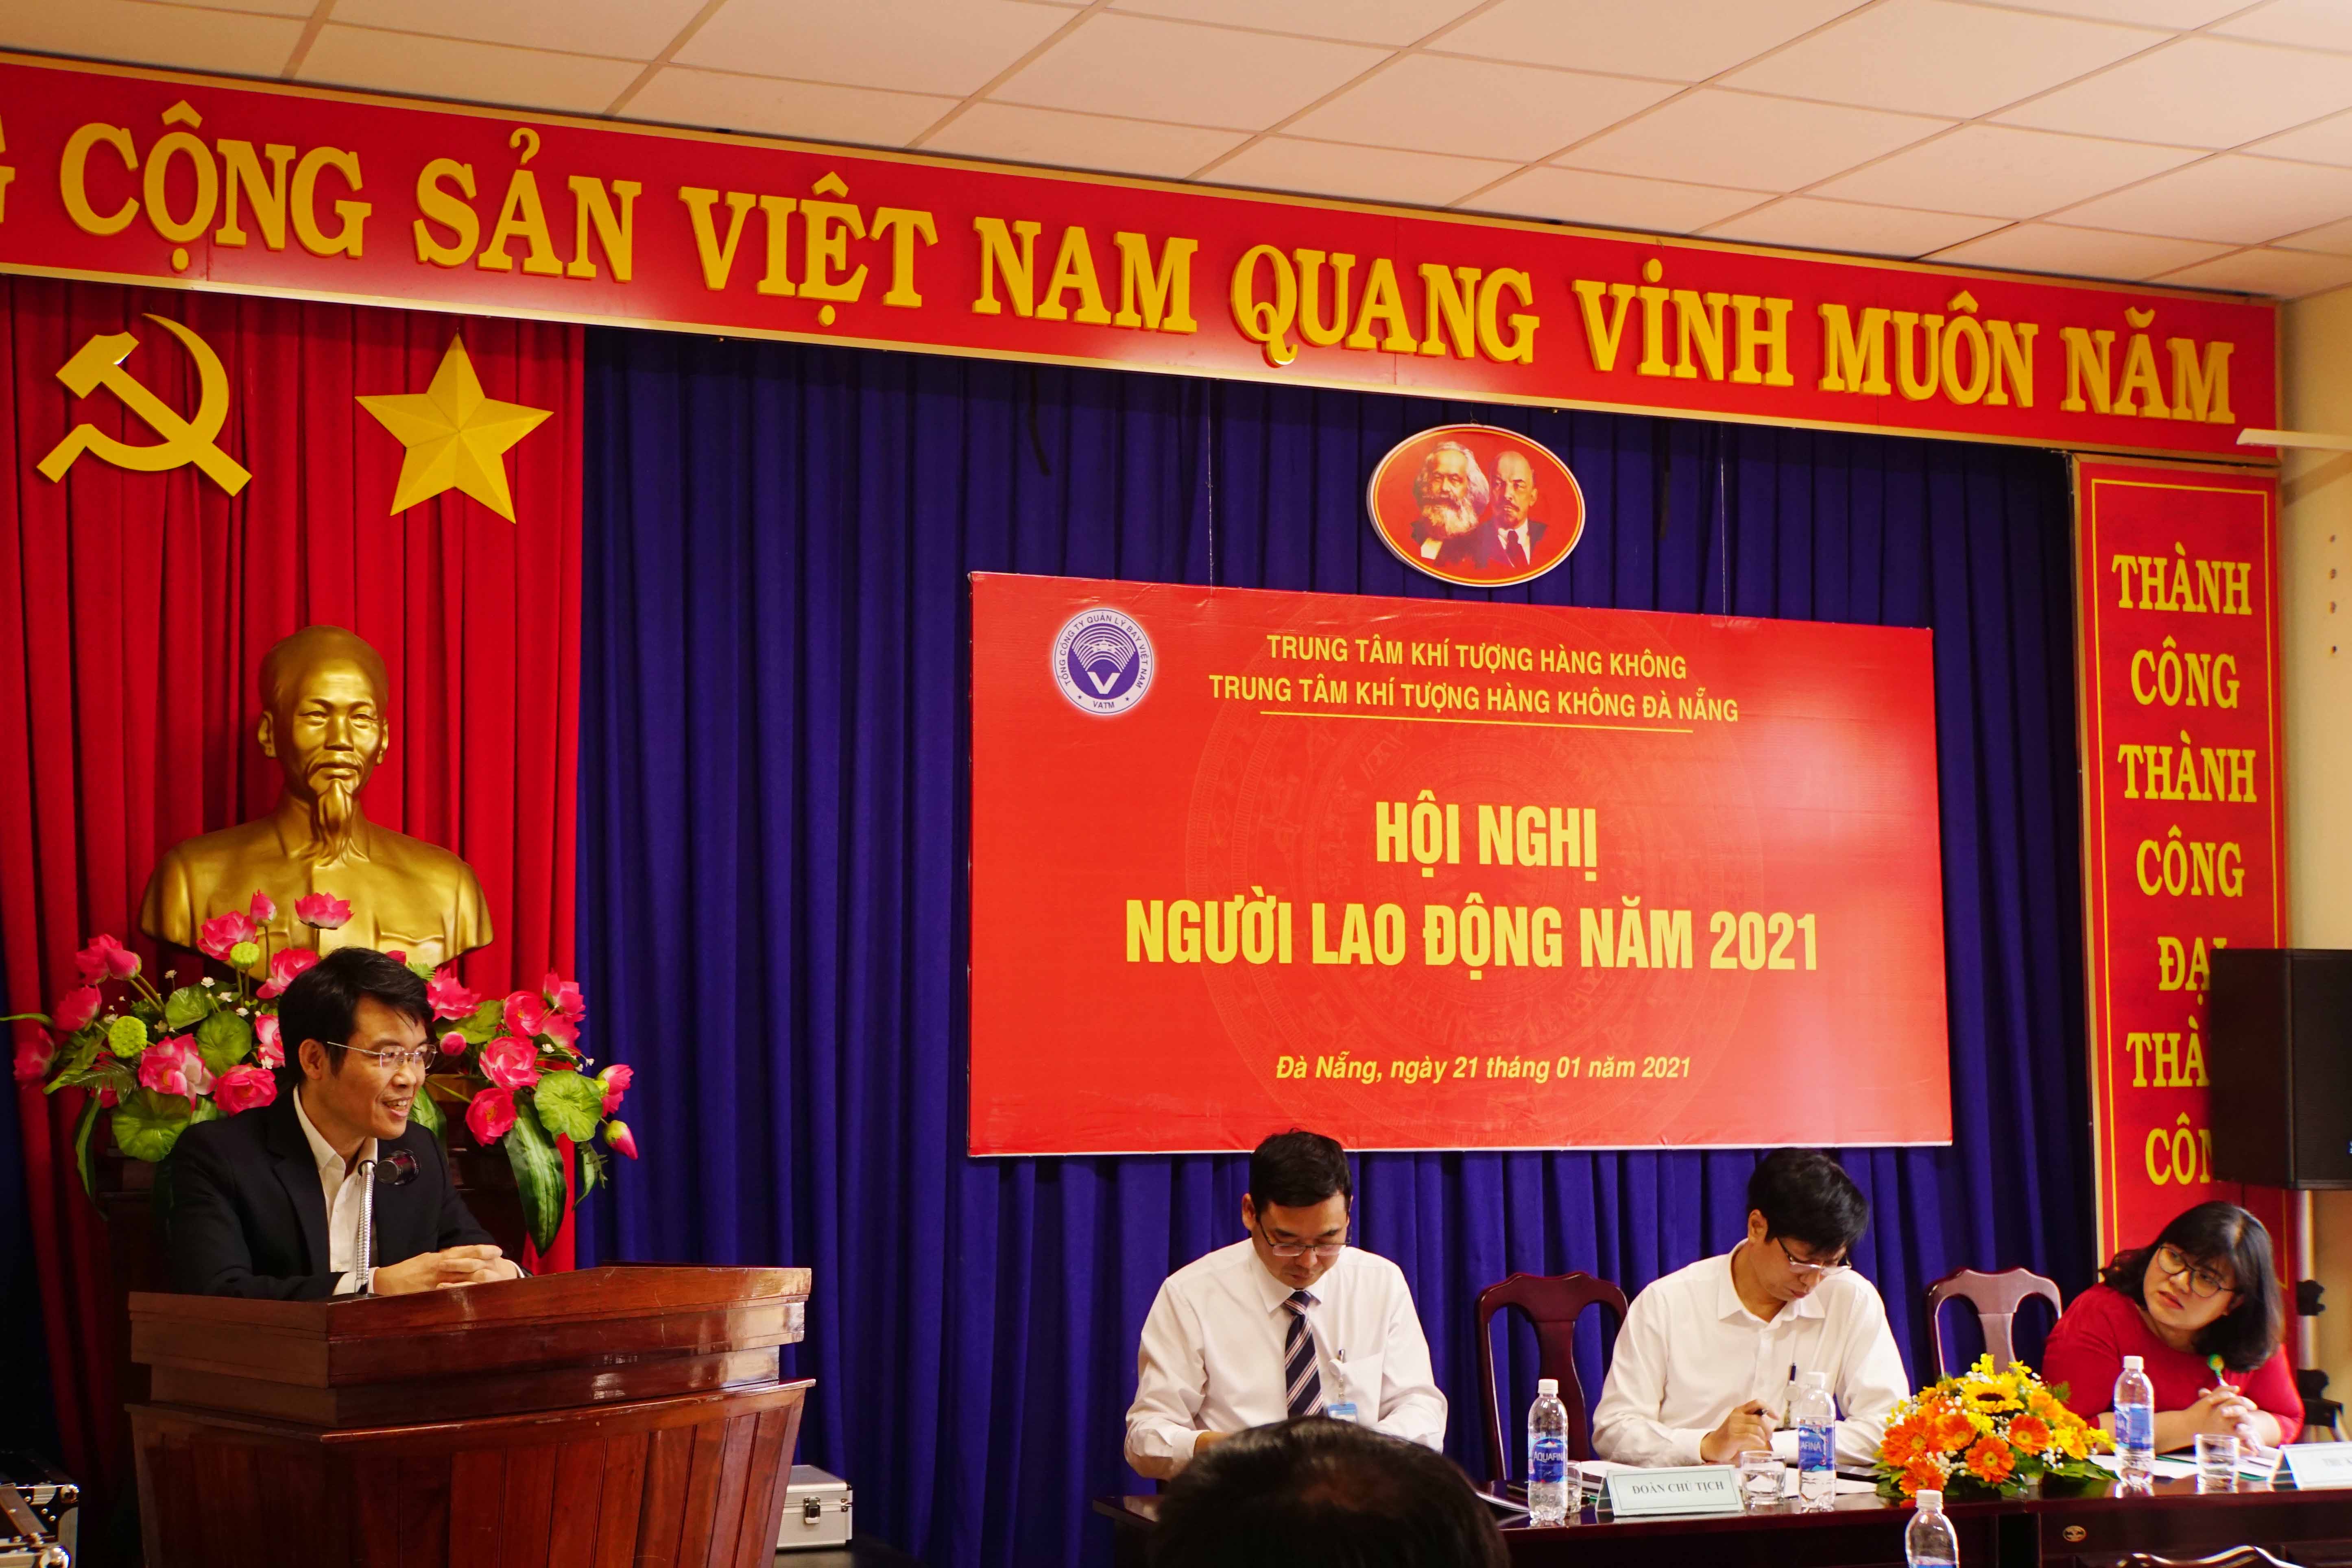 Trung tâm Khí tượng hàng không Đà Nẵng tổ chức Hội nghị người lao động năm 2021